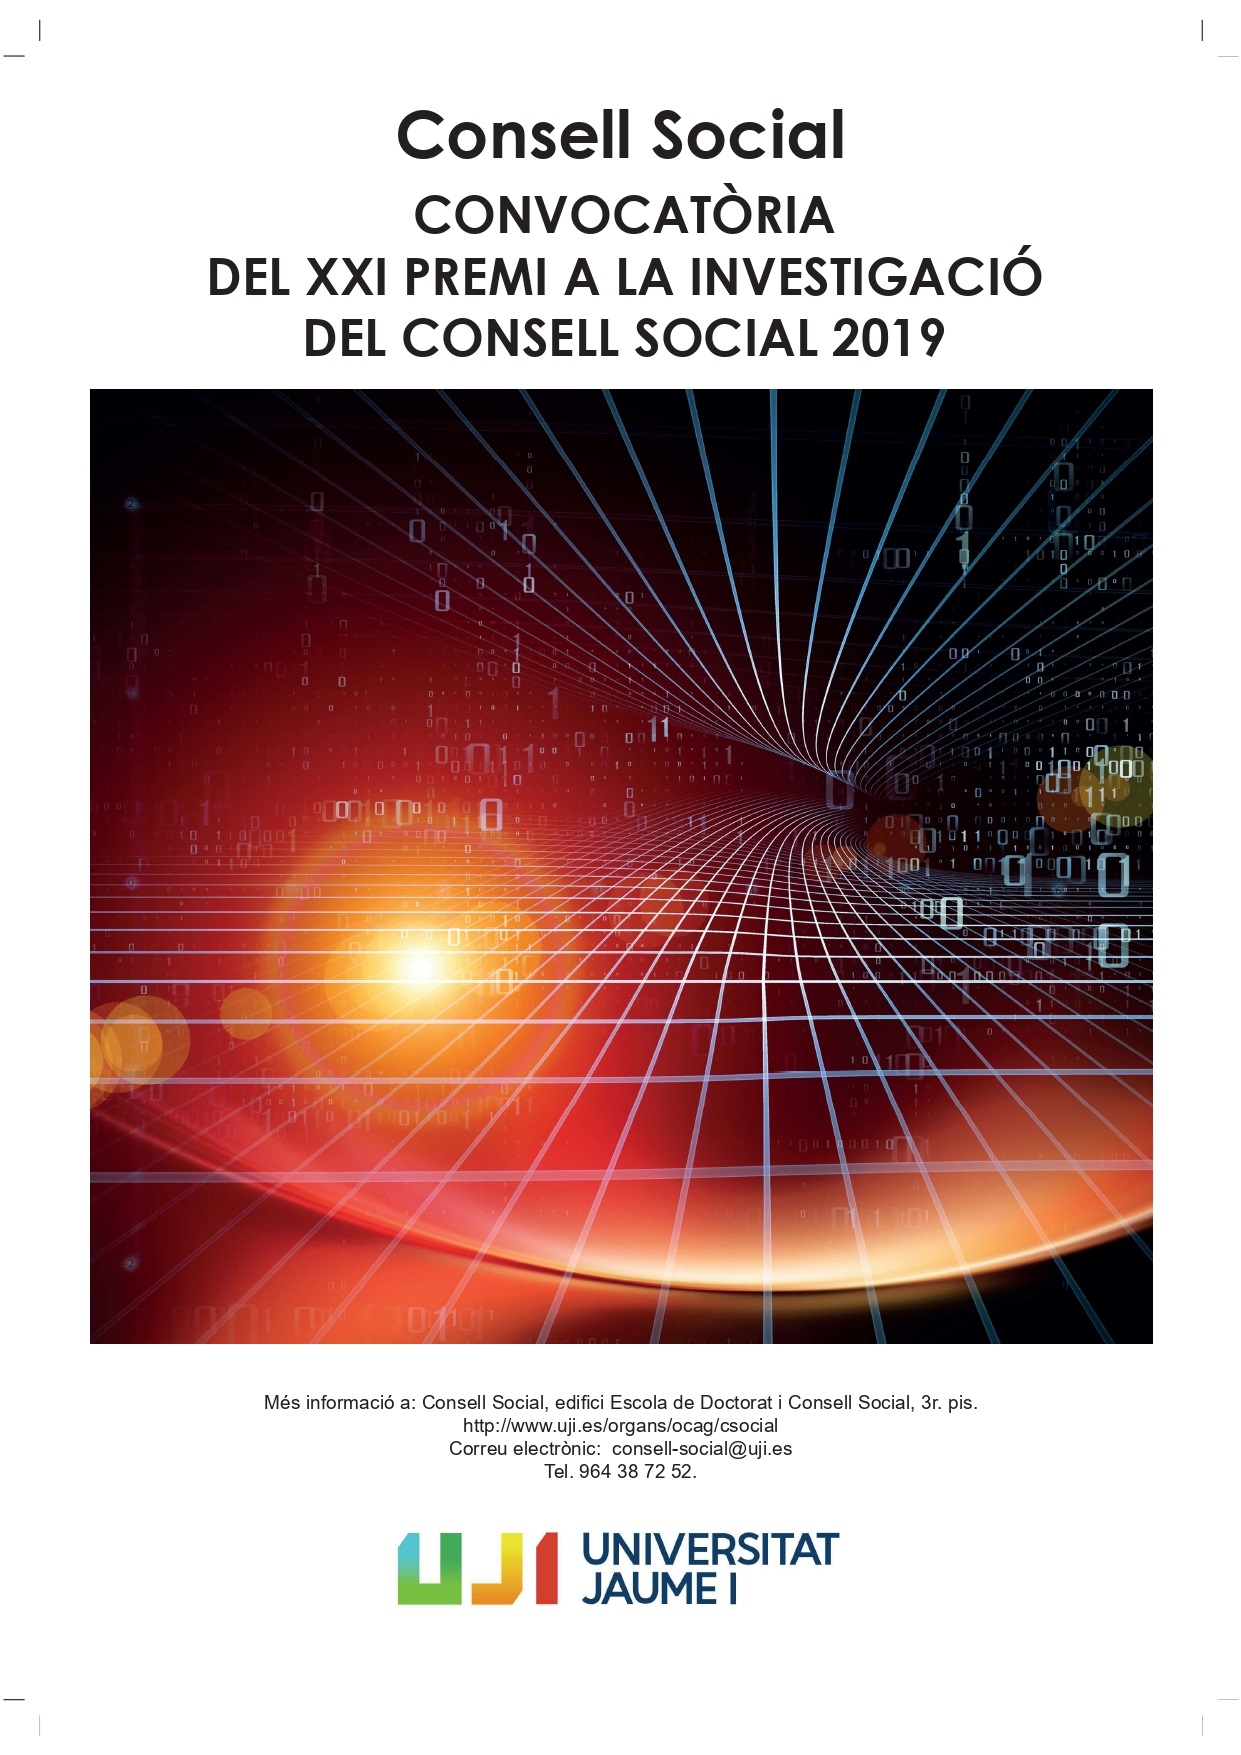 Cartell del XXI Premi del Consell Social a la Investigació 2019